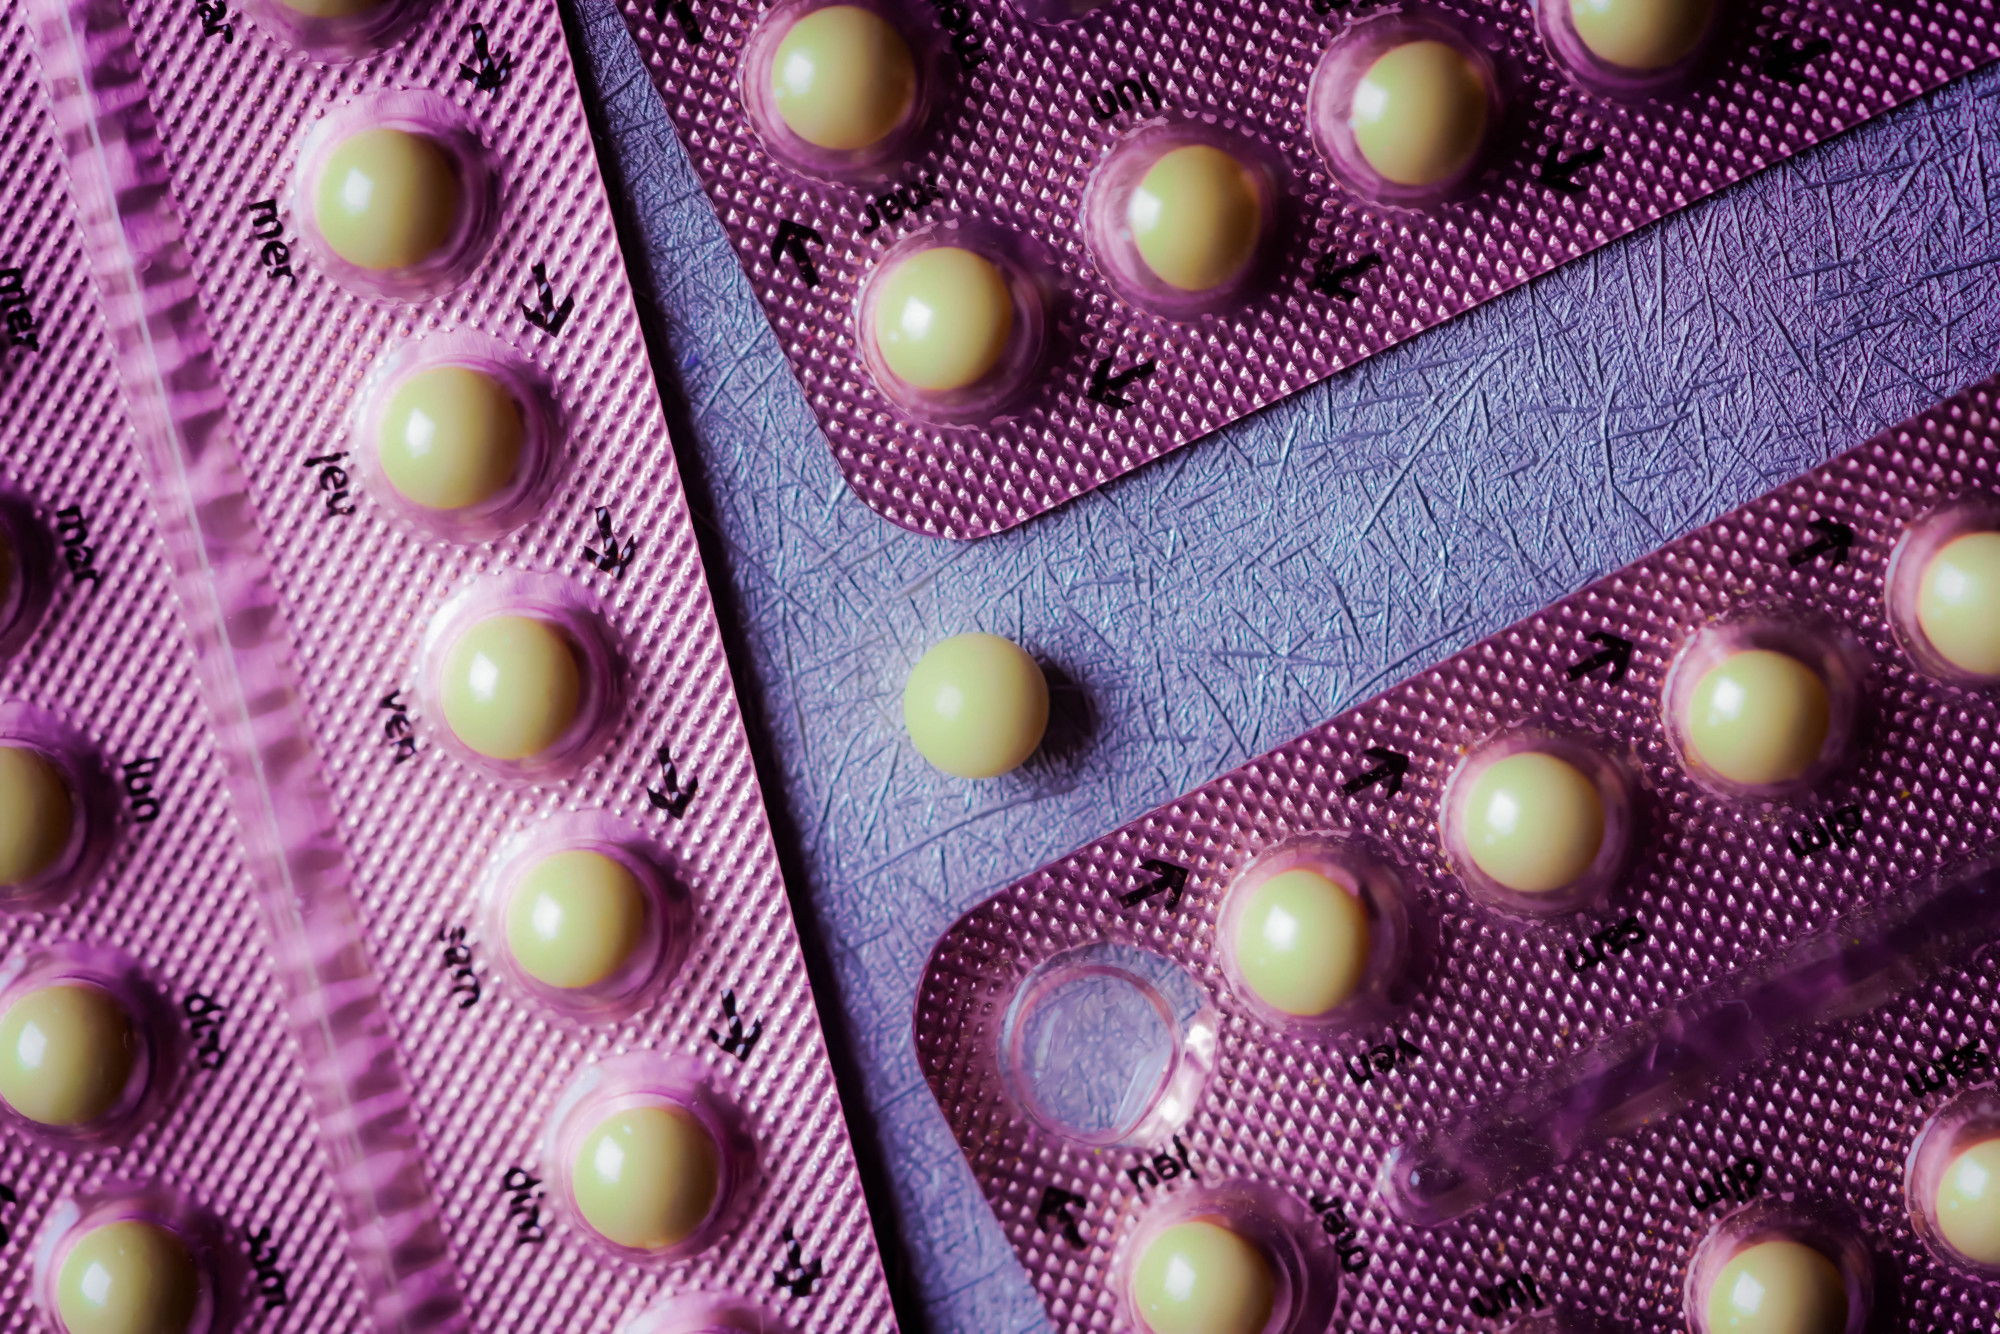 19 millió nőnek nincs hozzáférése a fogamzásgátláshoz az USA-ban, ezért az illegális online gyógyszertárakat keresik